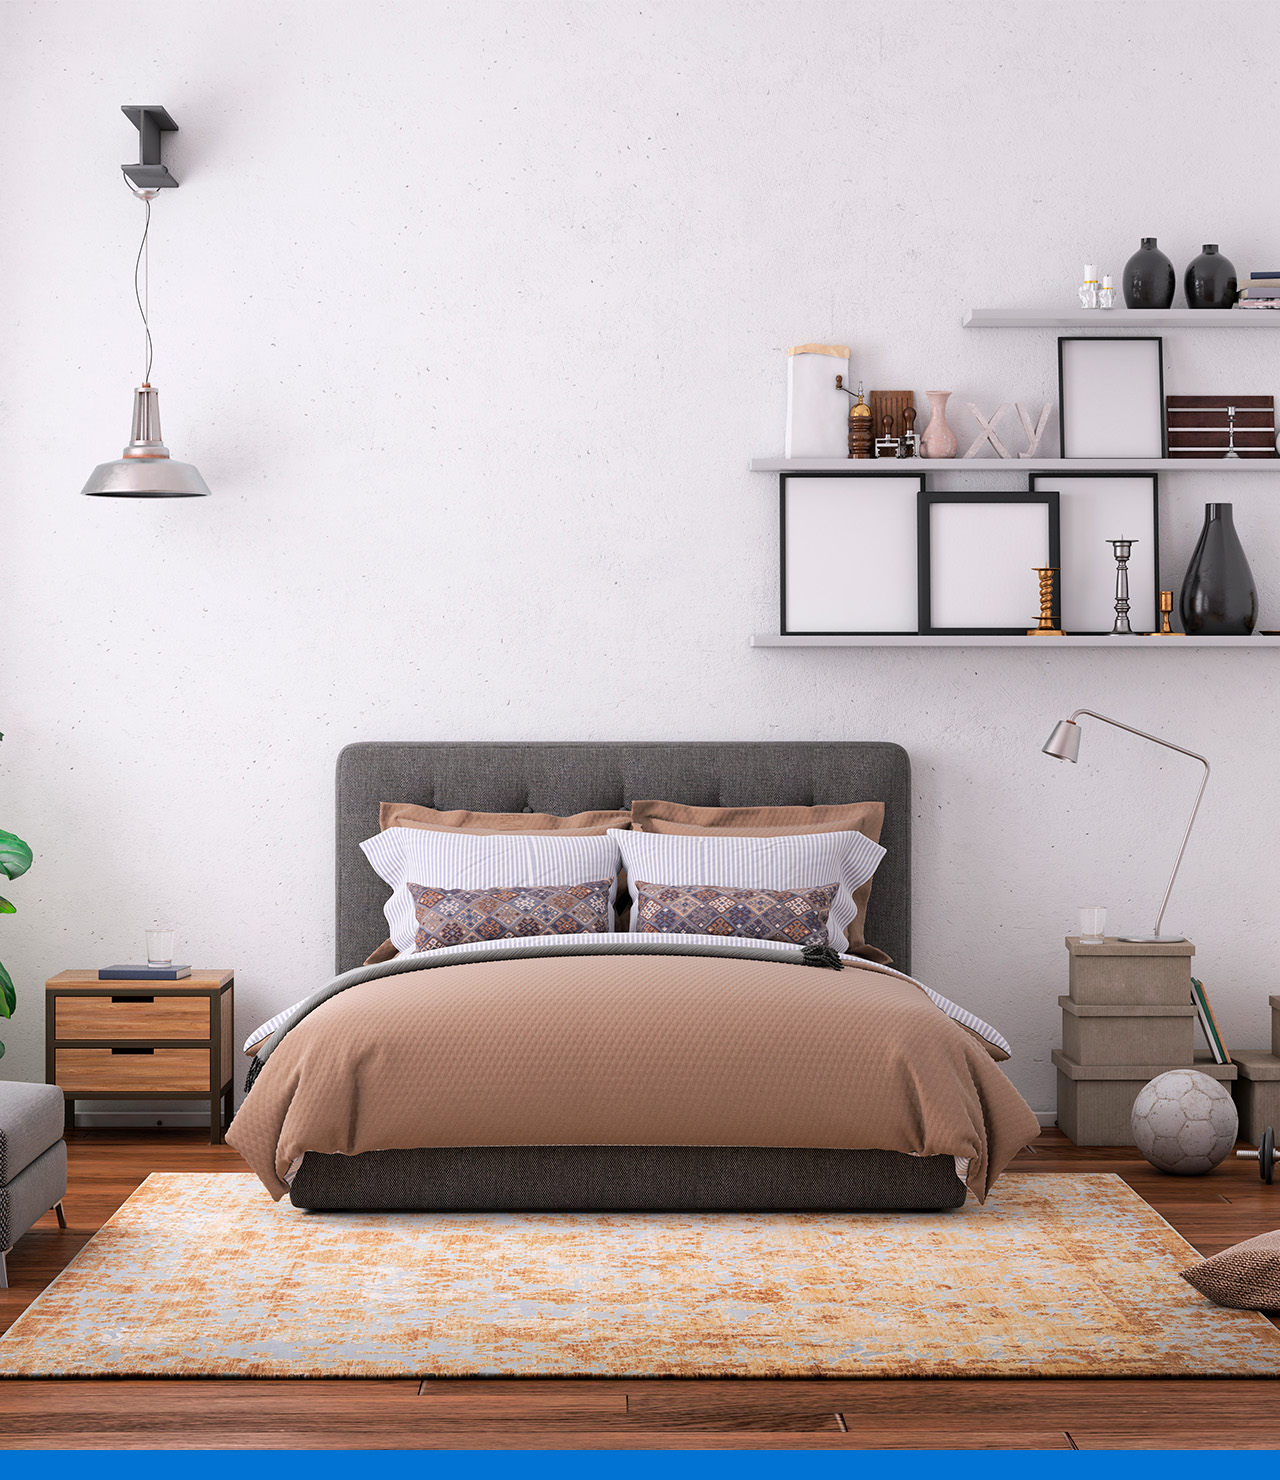 Decoración sencilla con un patrón natural para tu habitación